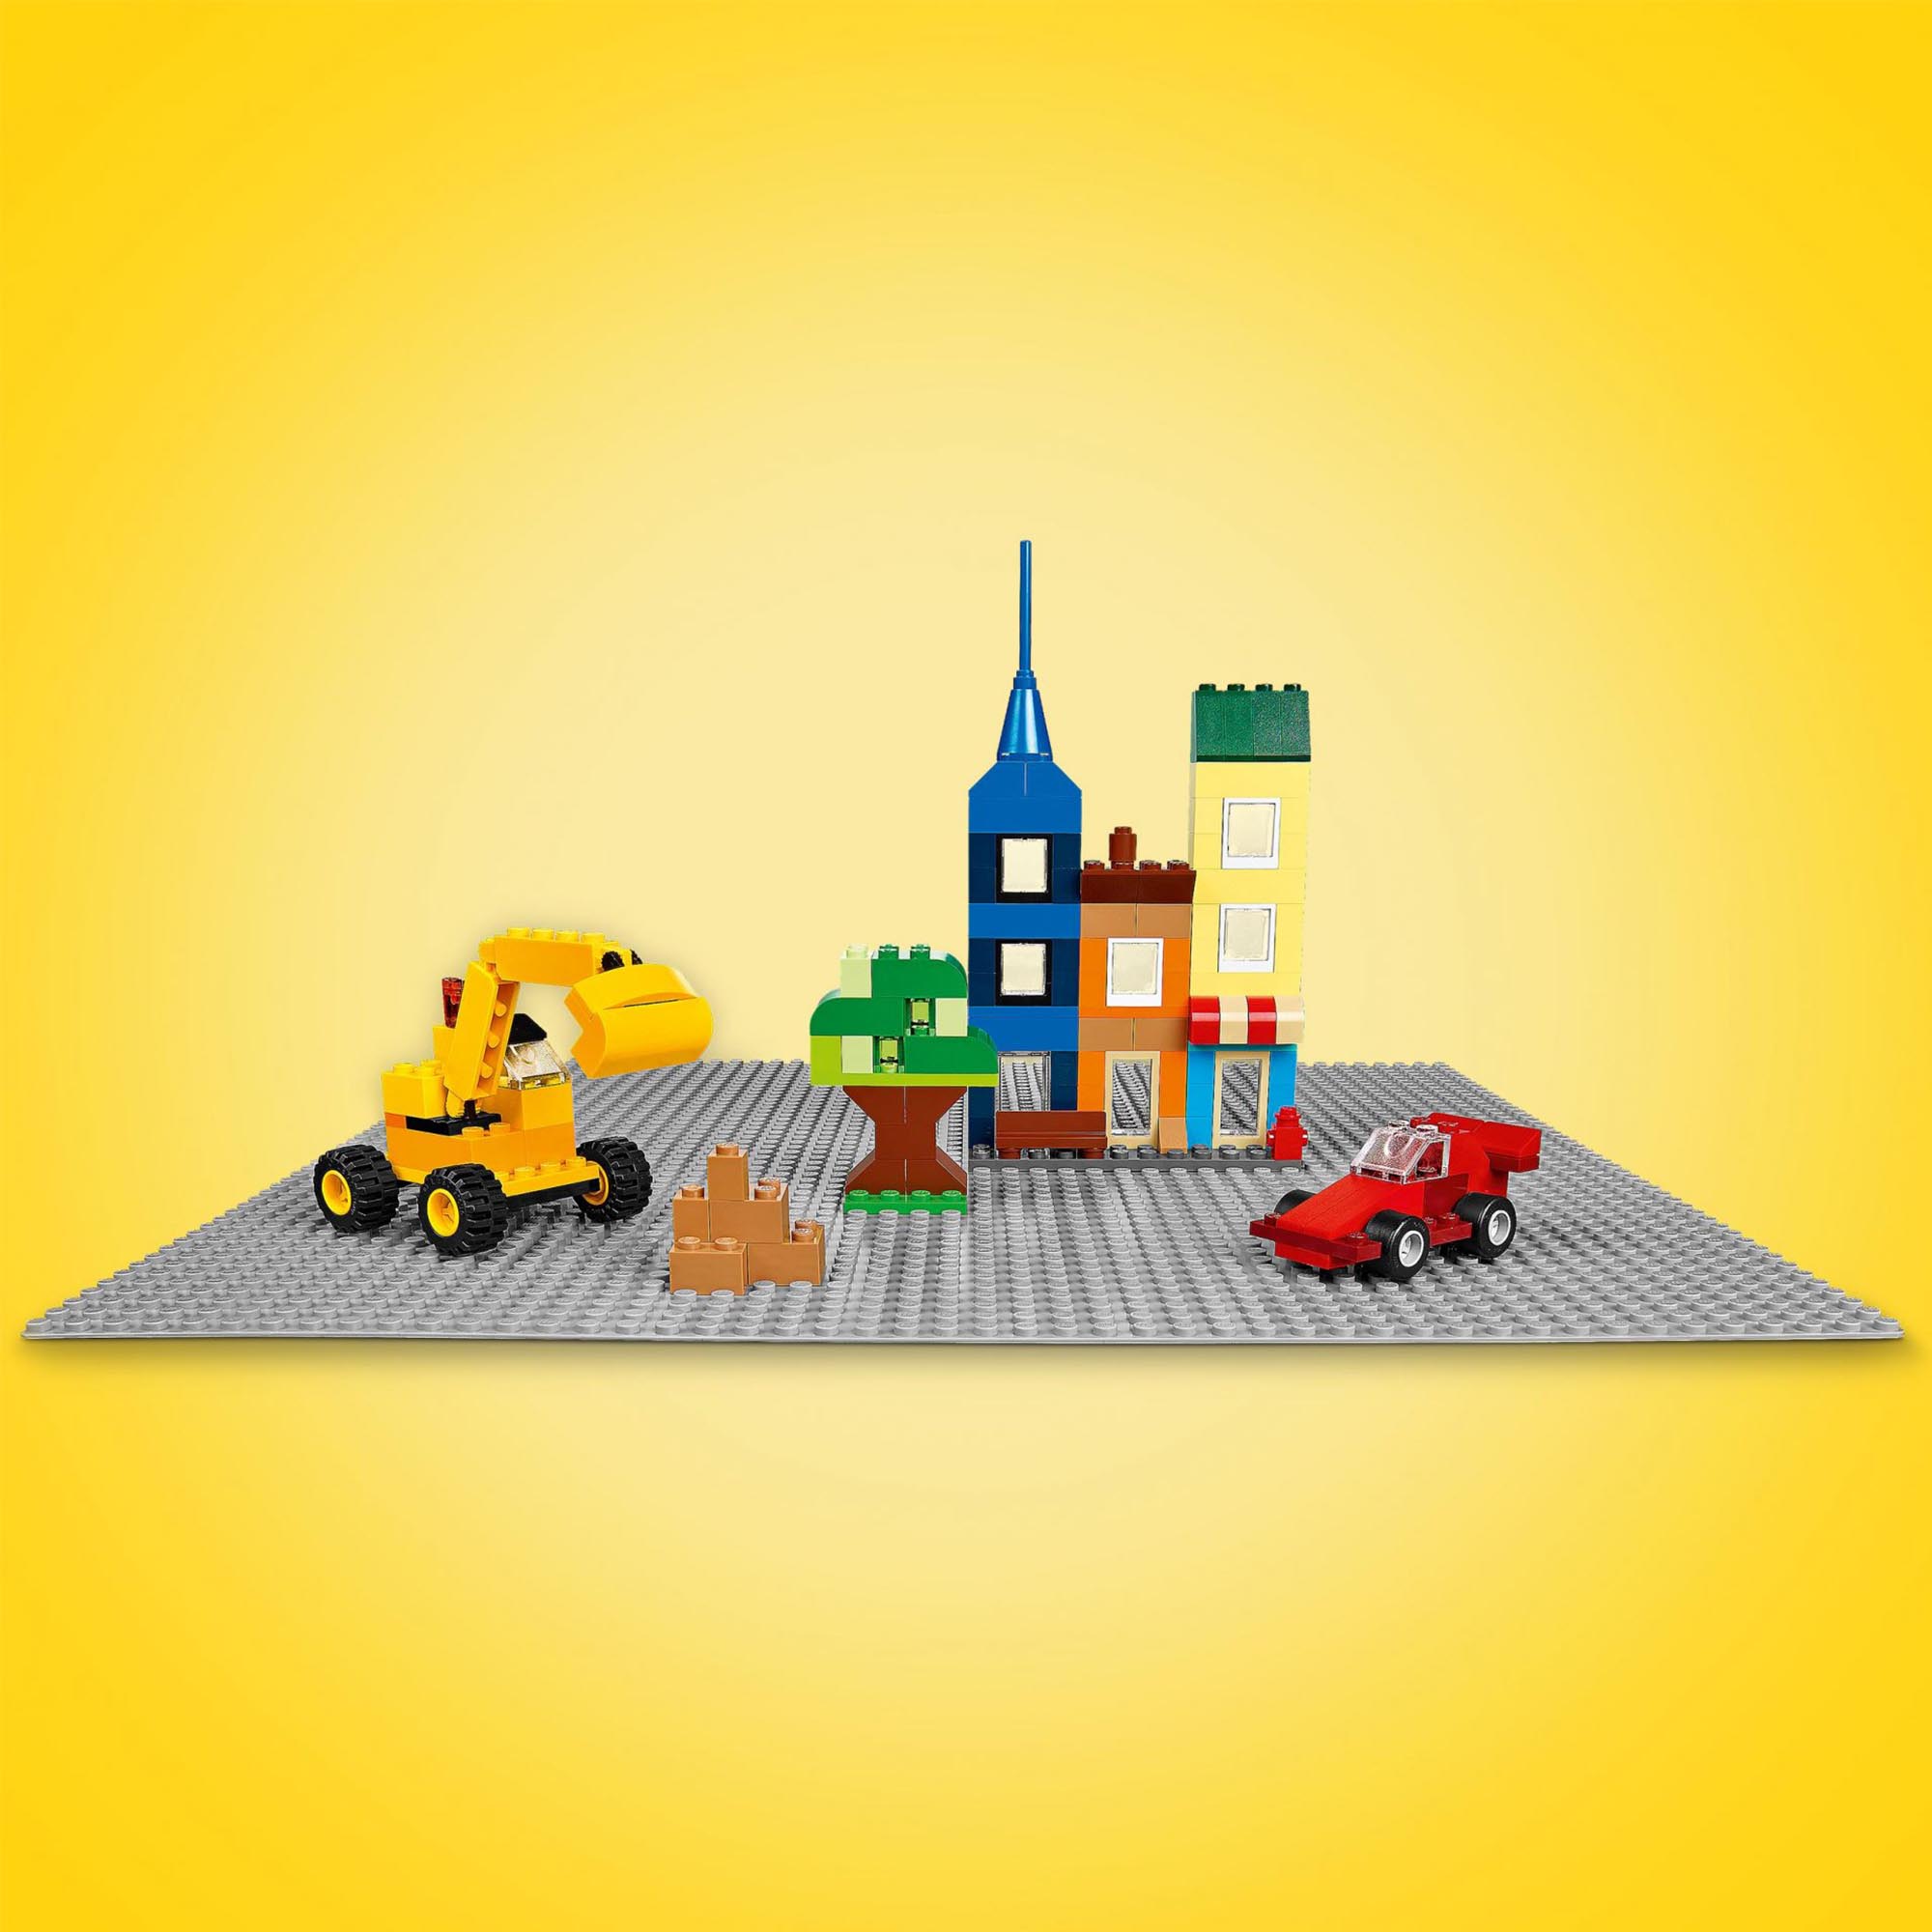 LEGO Classic Base Grigia, Tavola per Costruzioni Quadrata con 48x48 Bottoncini,  11024, , large